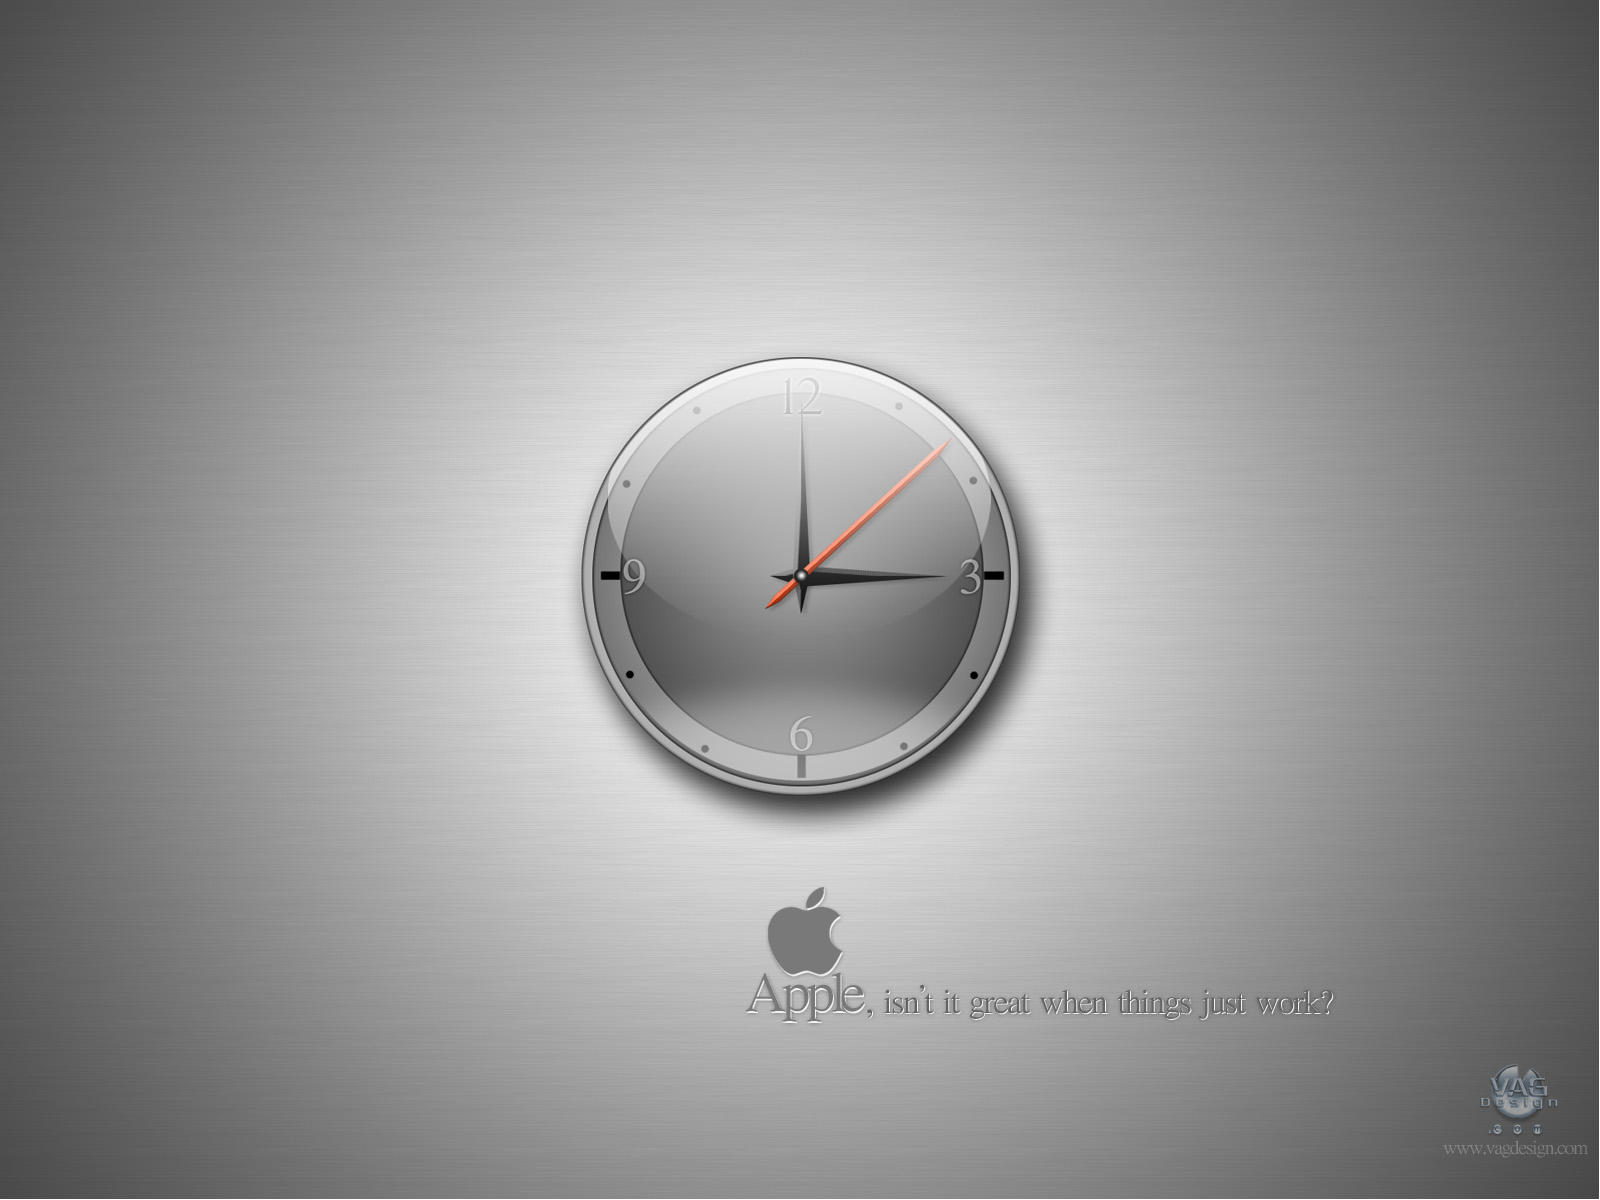 Apple__things_just_work__by_makrivag.jpg